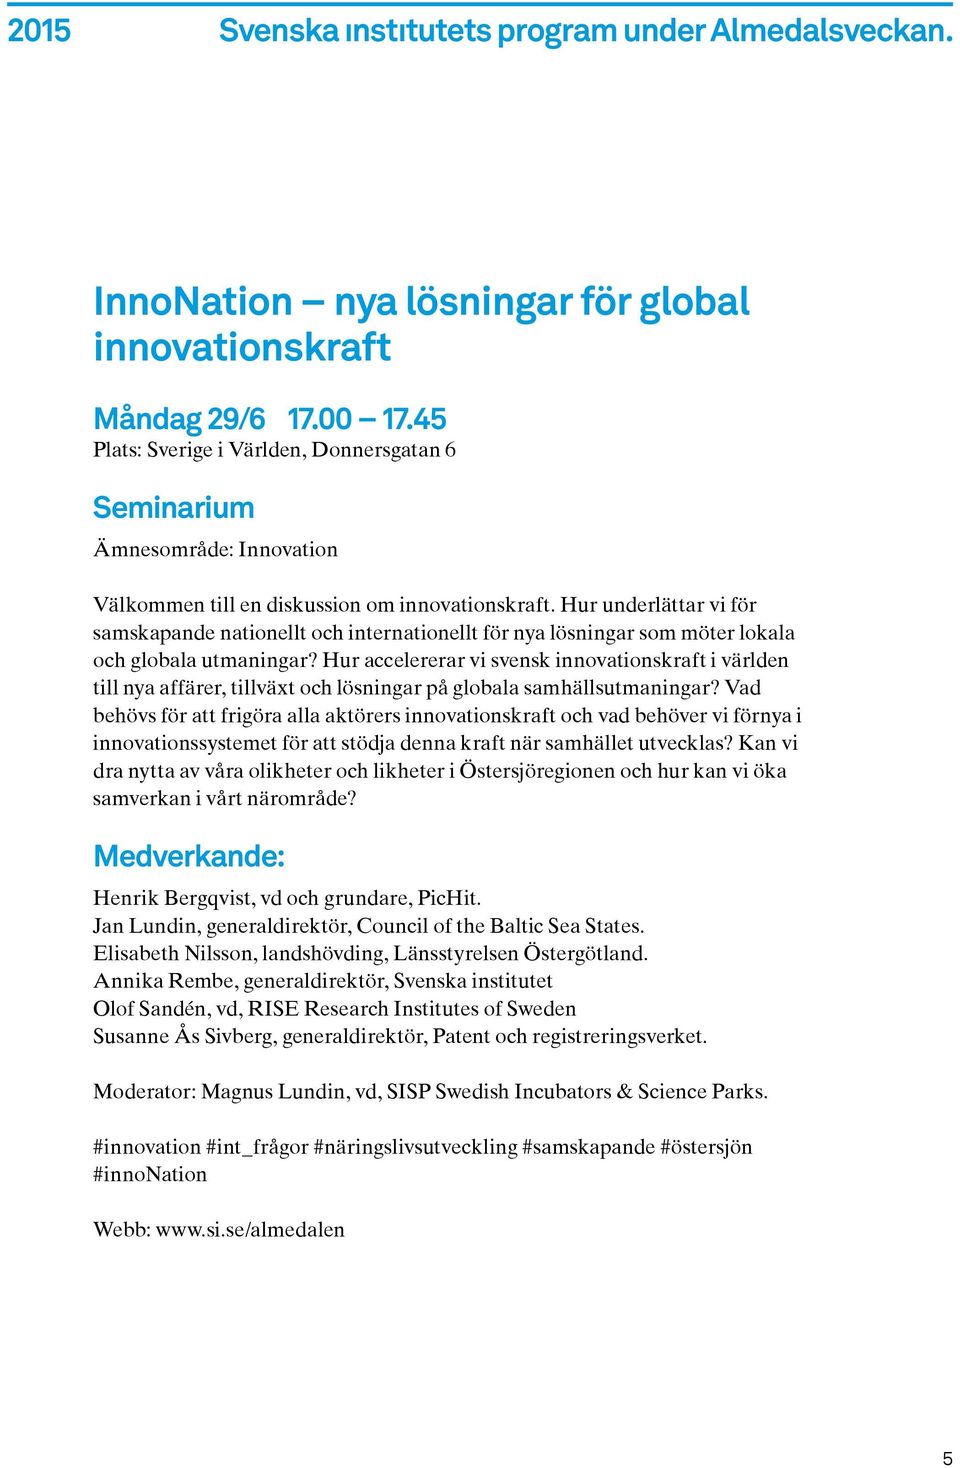 Hur accelererar vi svensk innovationskraft i världen till nya affärer, tillväxt och lösningar på globala samhällsutmaningar?